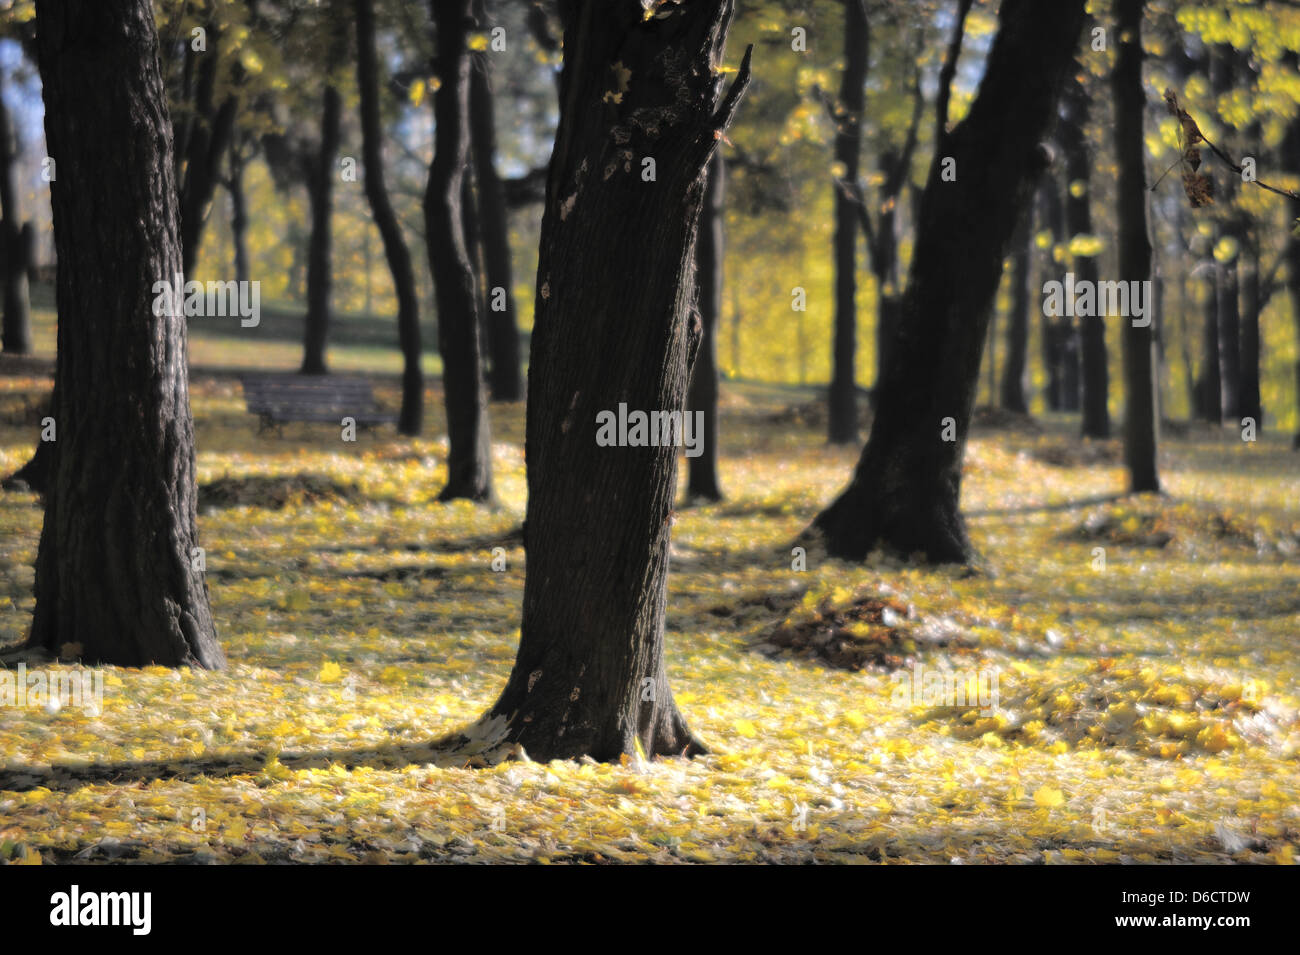 Autumn park, soft-focus lens. Stock Photo